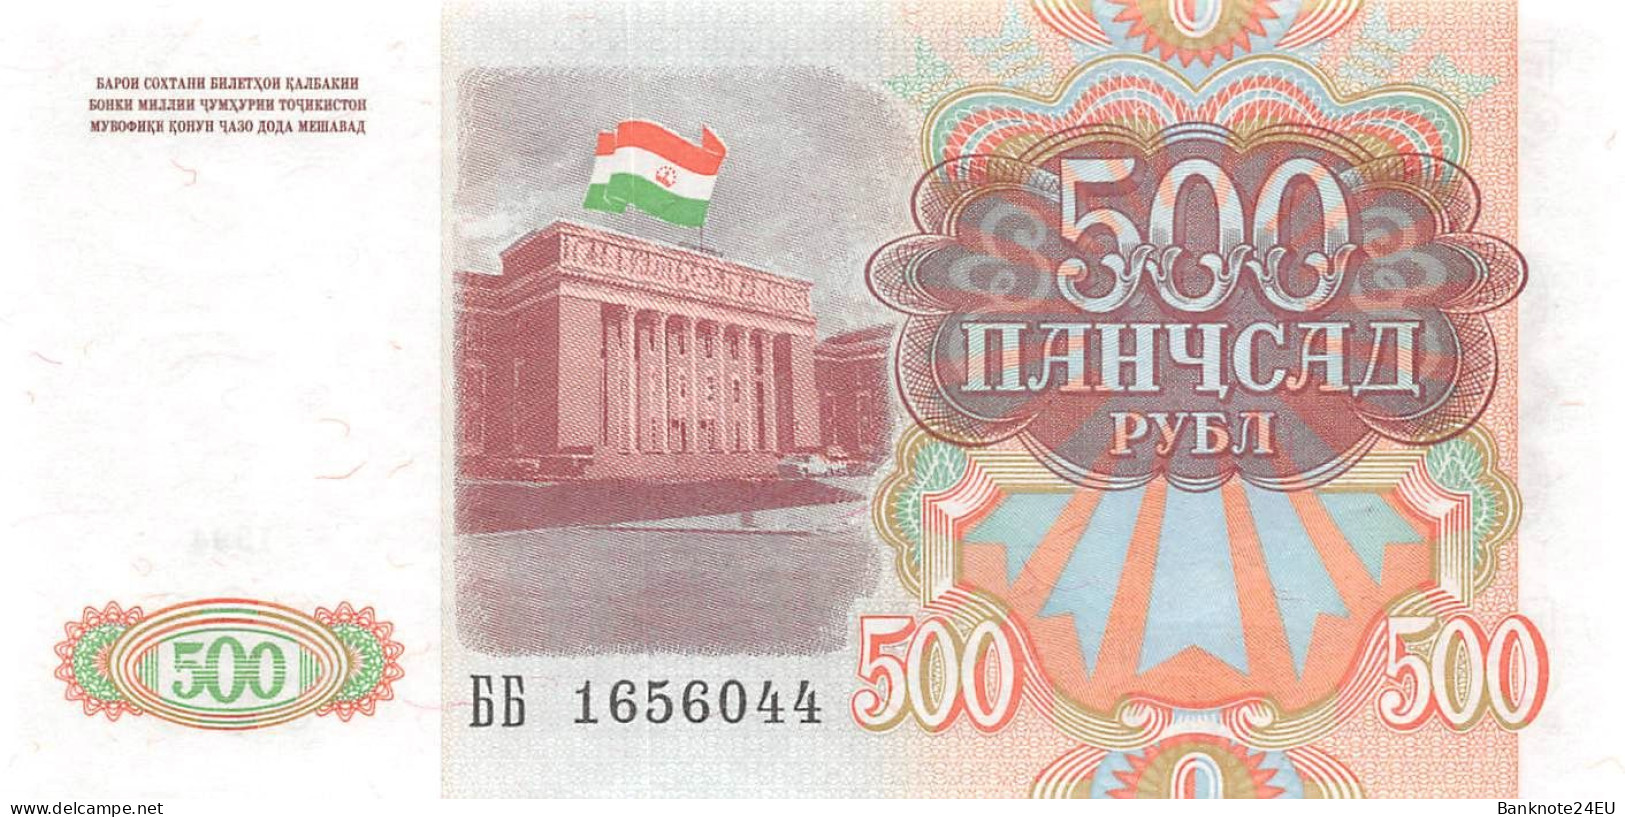 Tajikistan 500 Rubles 1994 Unc Pn 8a, Banknote24 - Tajikistan